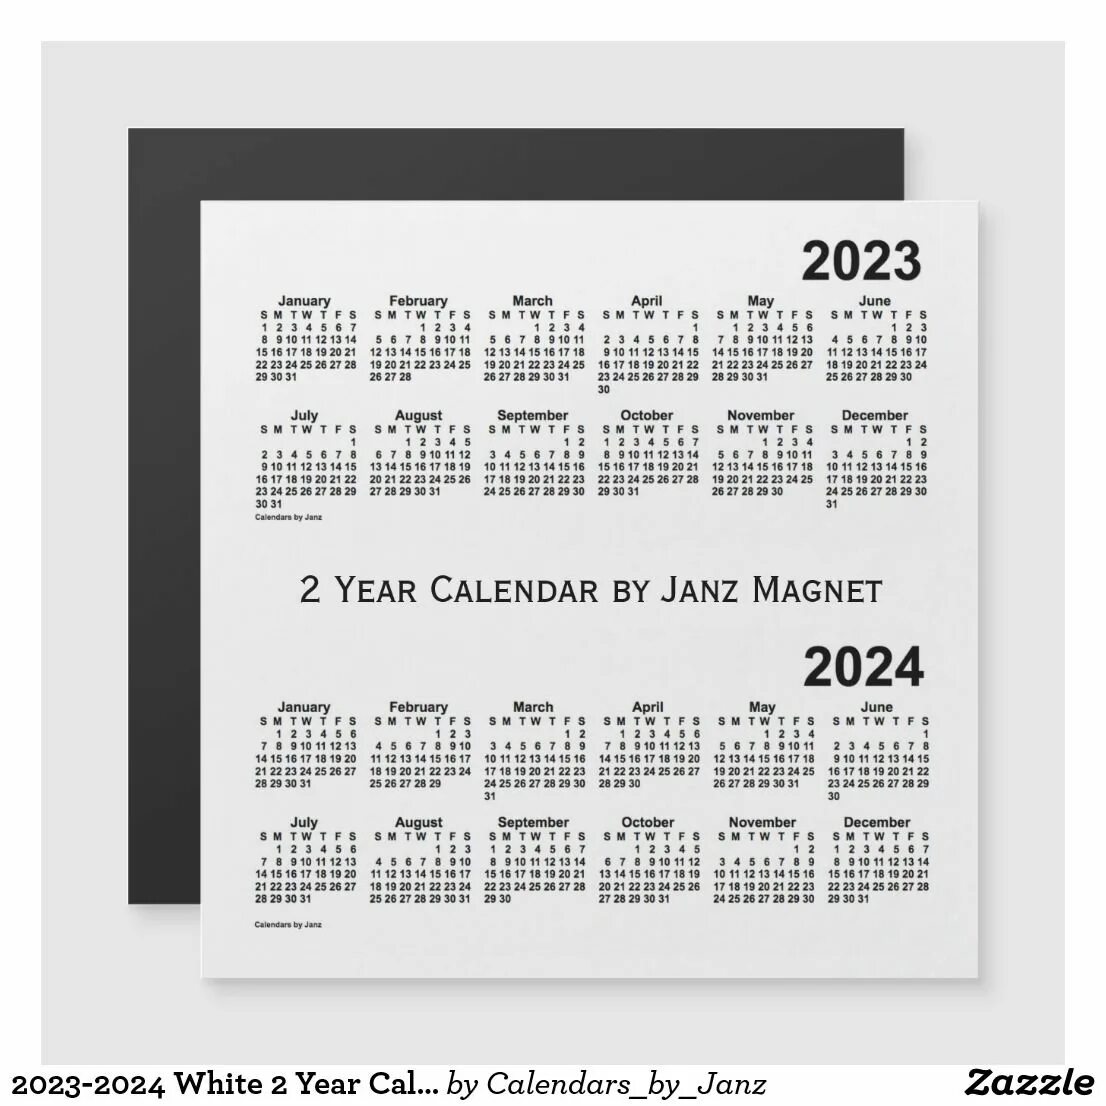 Календарь 2024 февраль география. Календарь 2024-2025. Календарь на февраль 2024 года. Календарь на 2025 год. Календарь 2024 2025 2026.